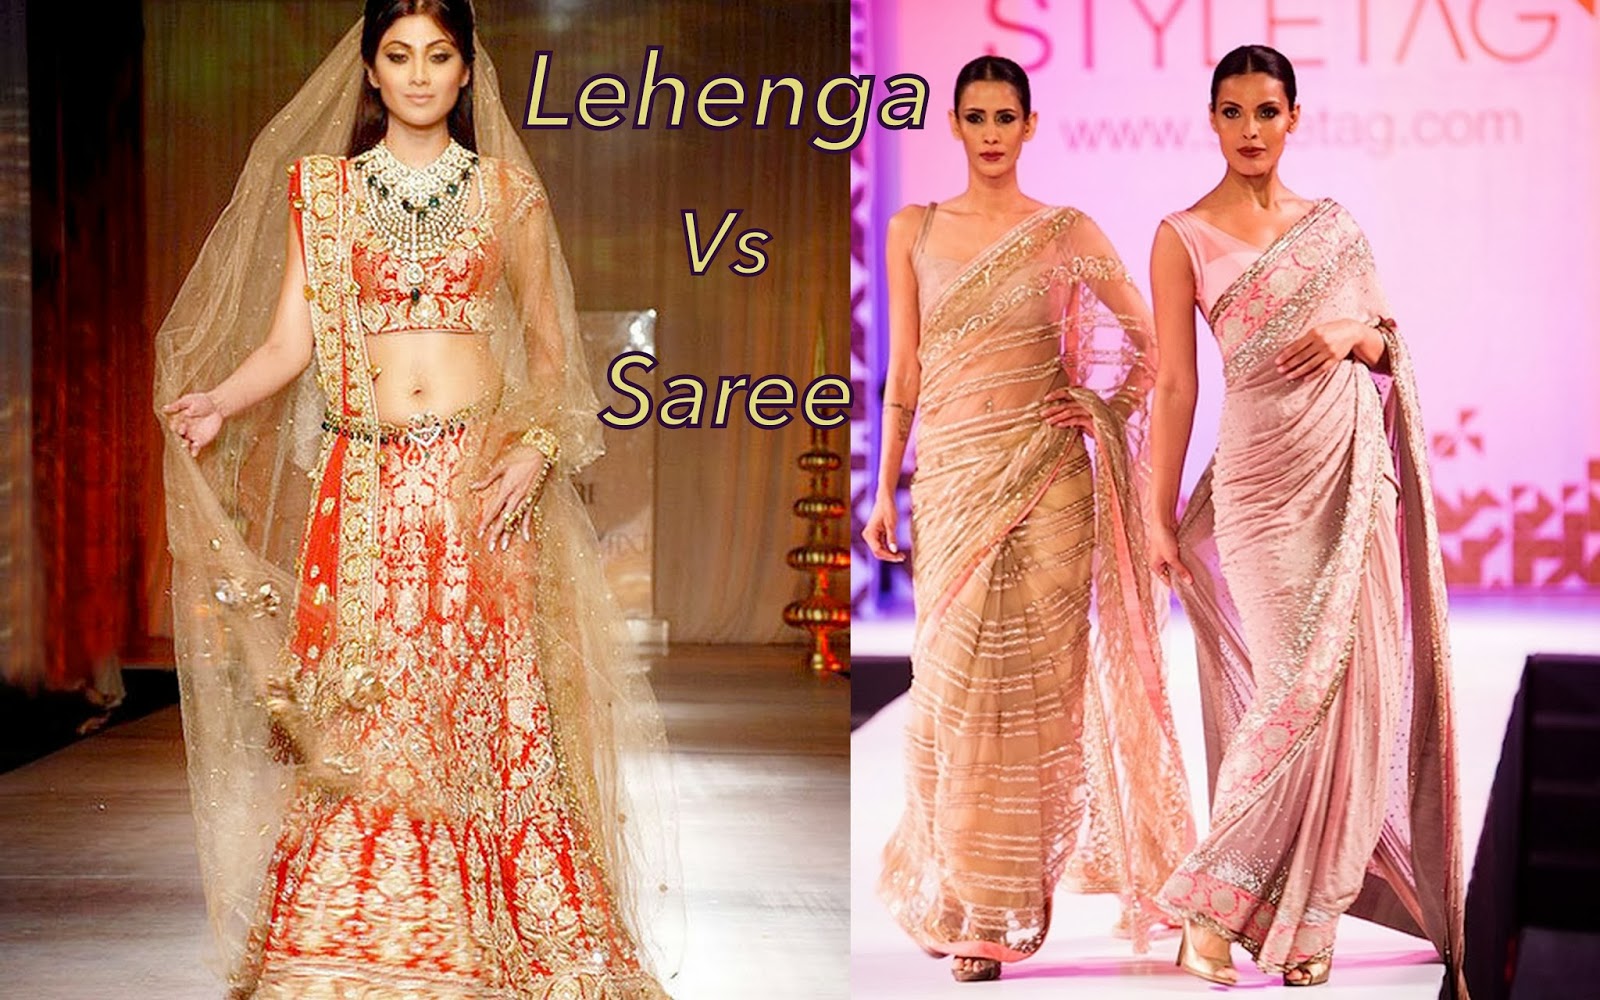 Banarasi Silk Sarees for Brides & Weddings - Types of Sarees & Looks |  WedMeGood